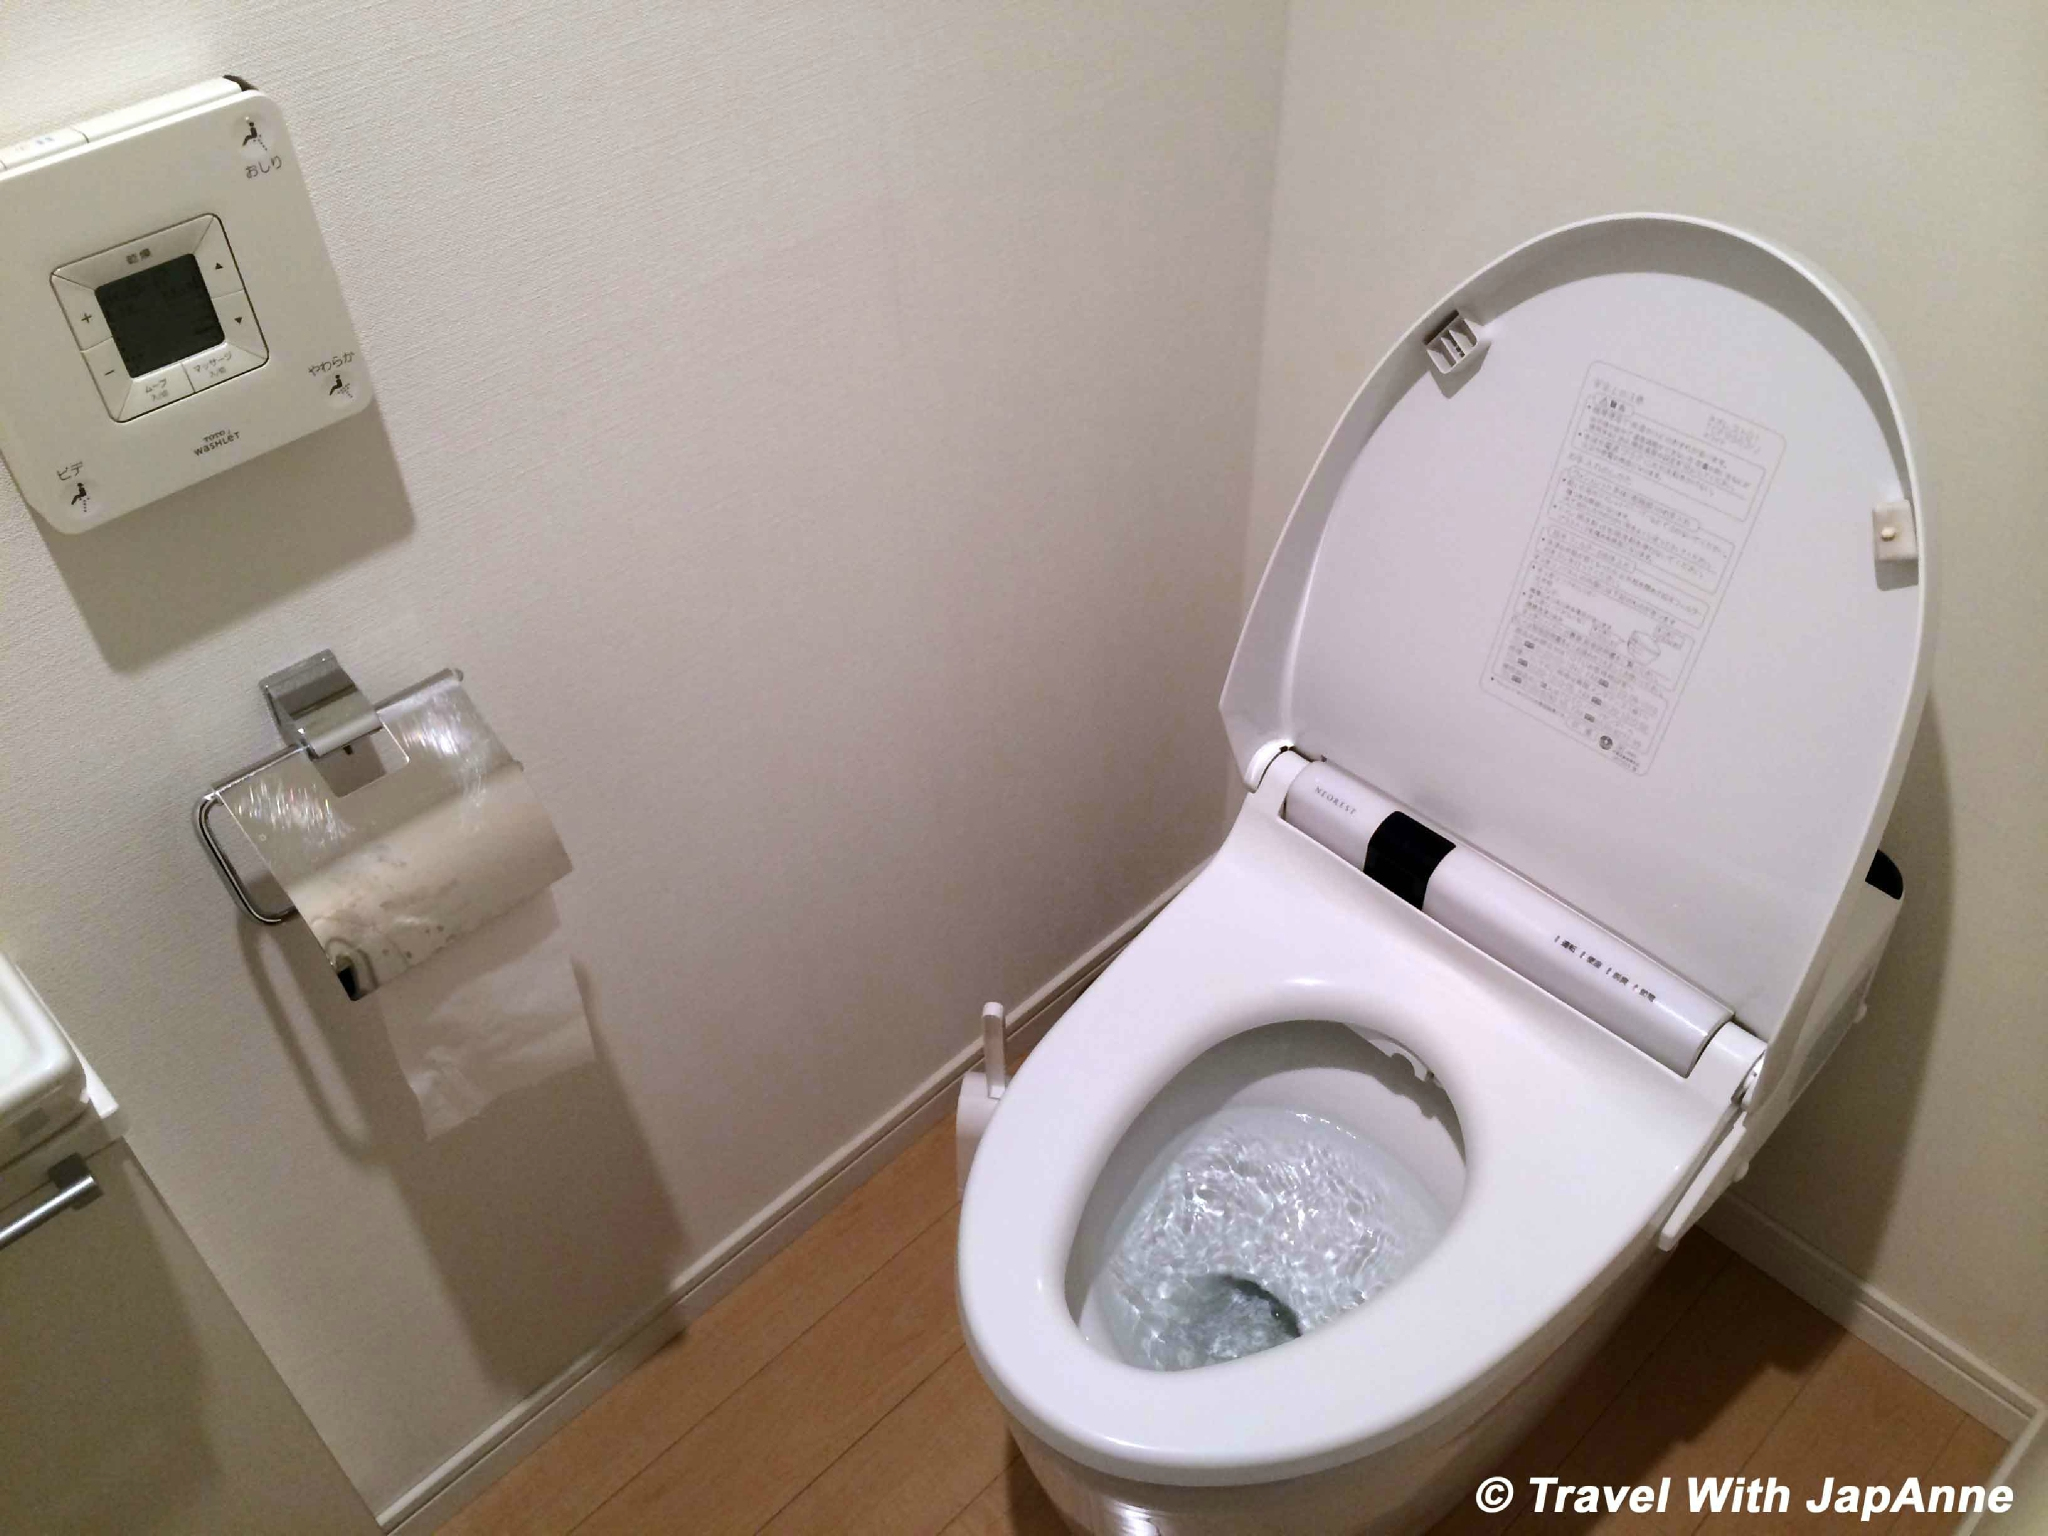 Les Toilettes Japonaises Travel With Japanne tout 